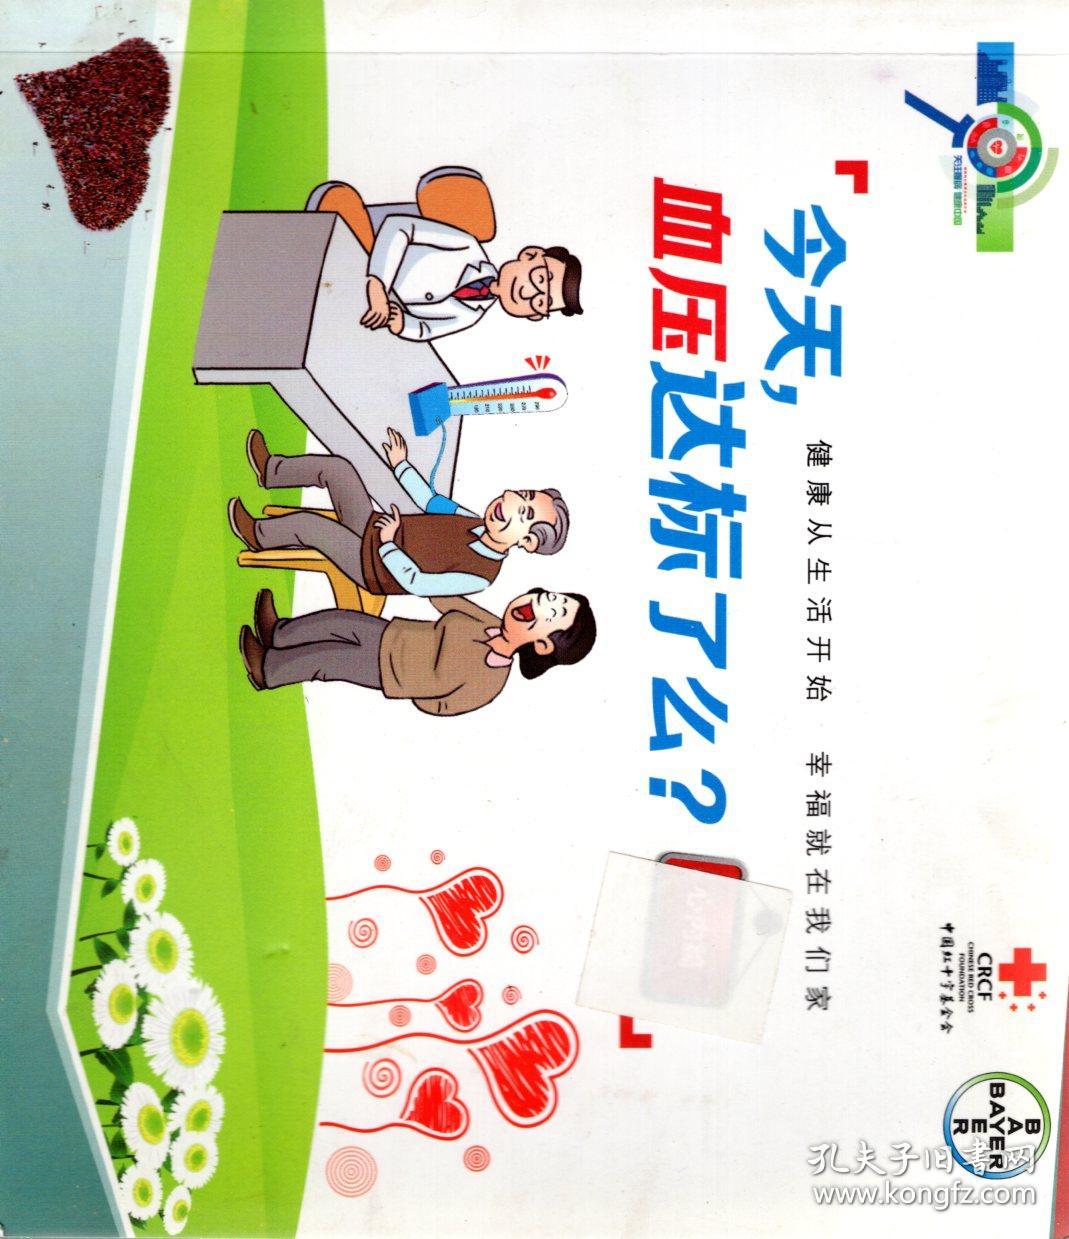 中国红十字基金会.今天，血压达标了么？健康从生活开始.幸福就在我们家